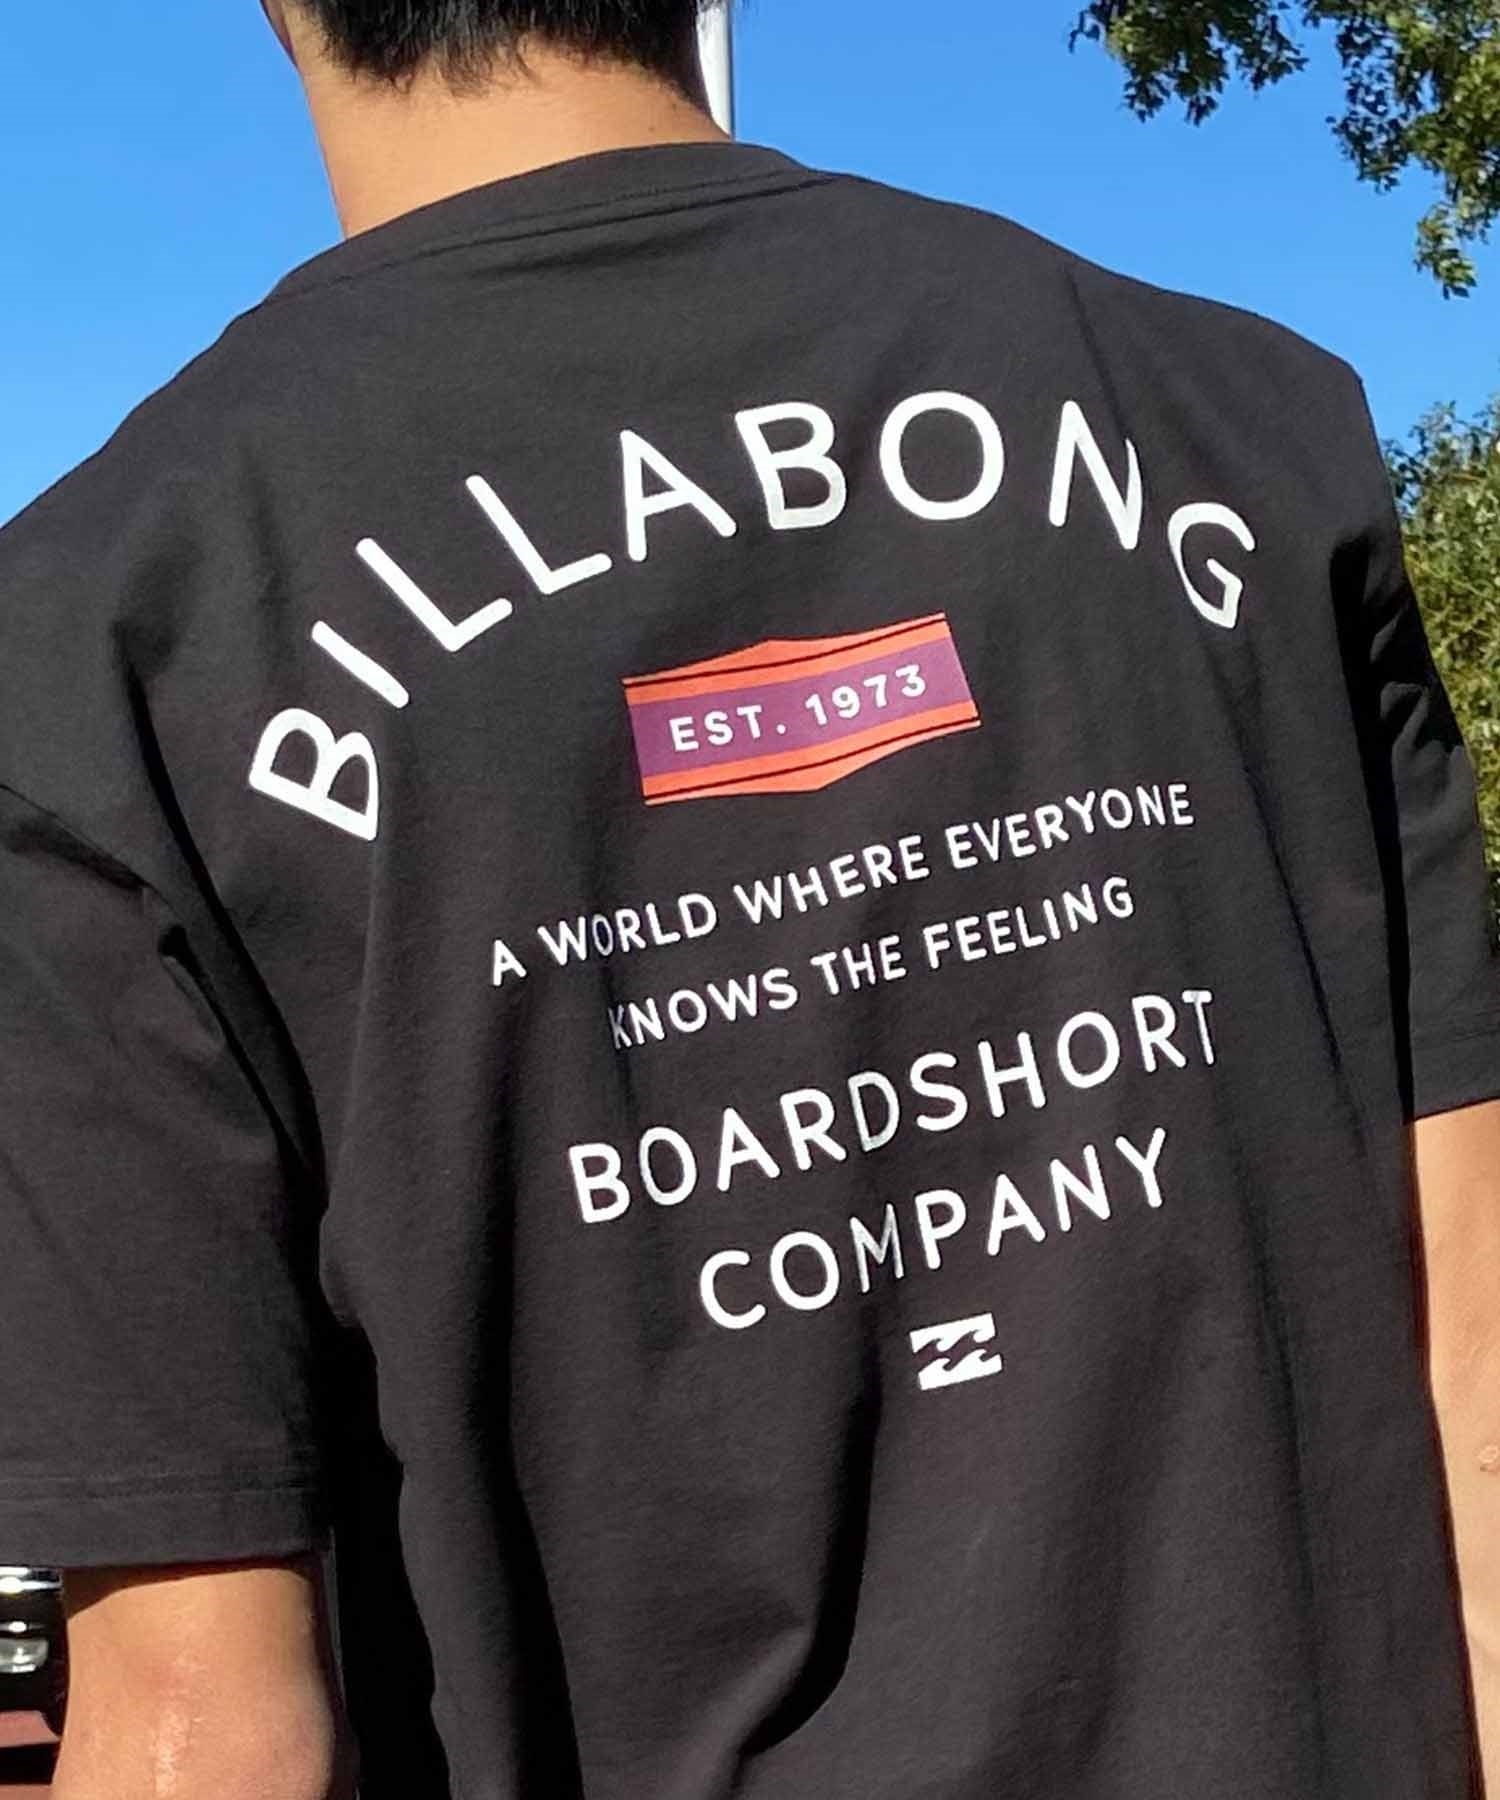 【マトメガイ対象】BILLABONG ビラボン PEAK Tシャツ 半袖 メンズ バックプリント クルーネック BE011-205(WHT-S)